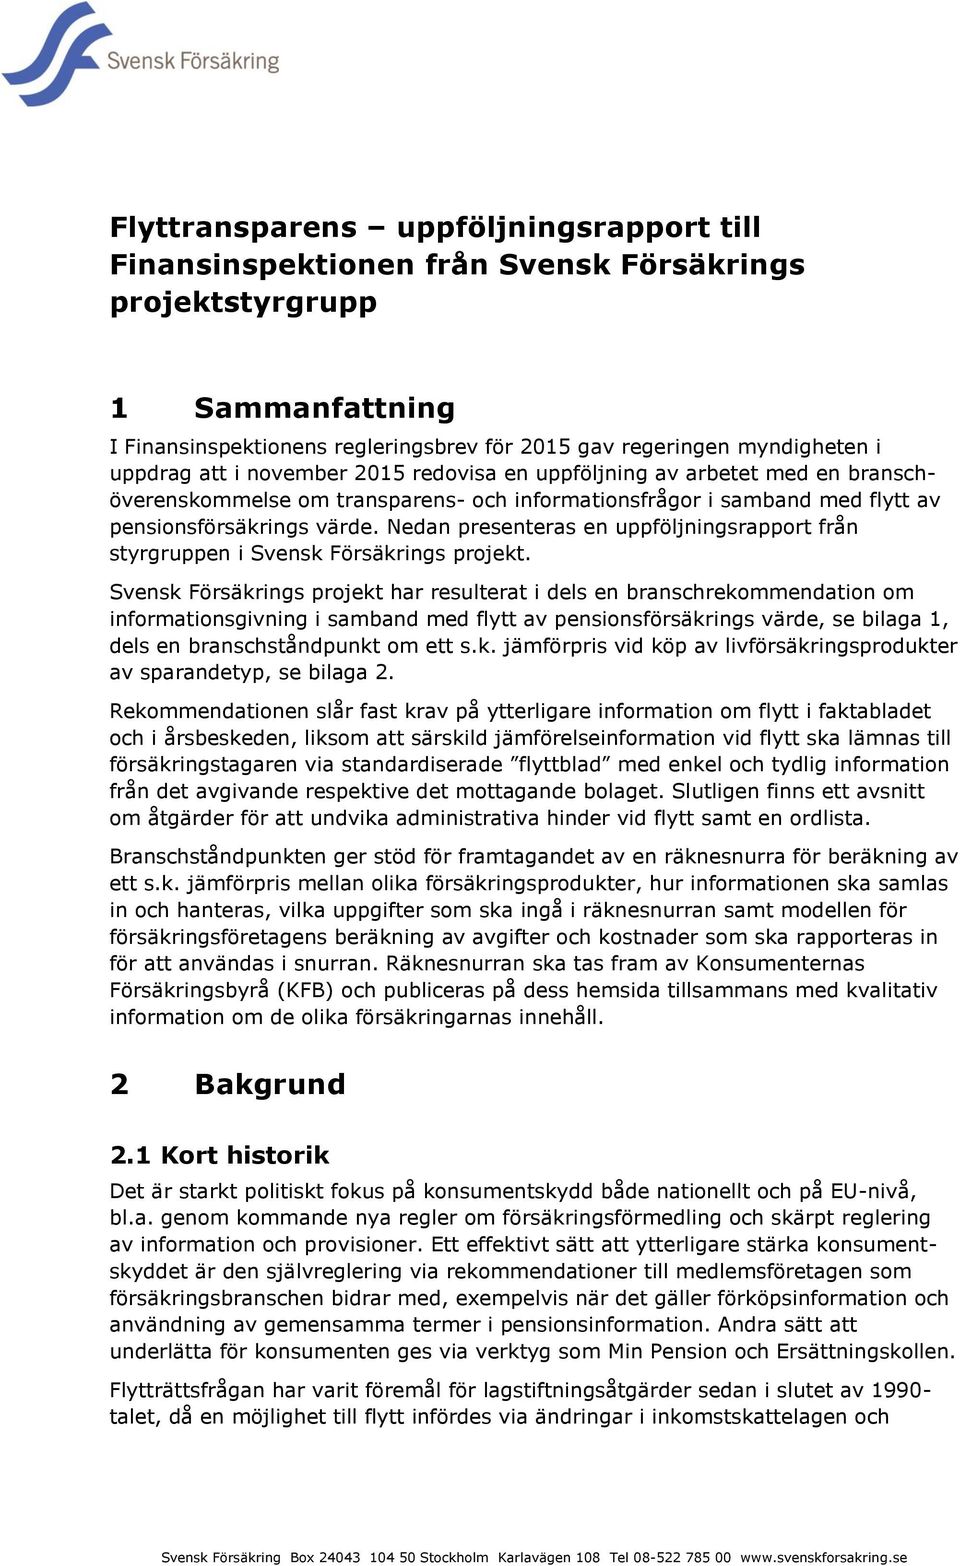 Nedan presenteras en uppföljningsrapport från styrgruppen i Svensk Försäkrings projekt.